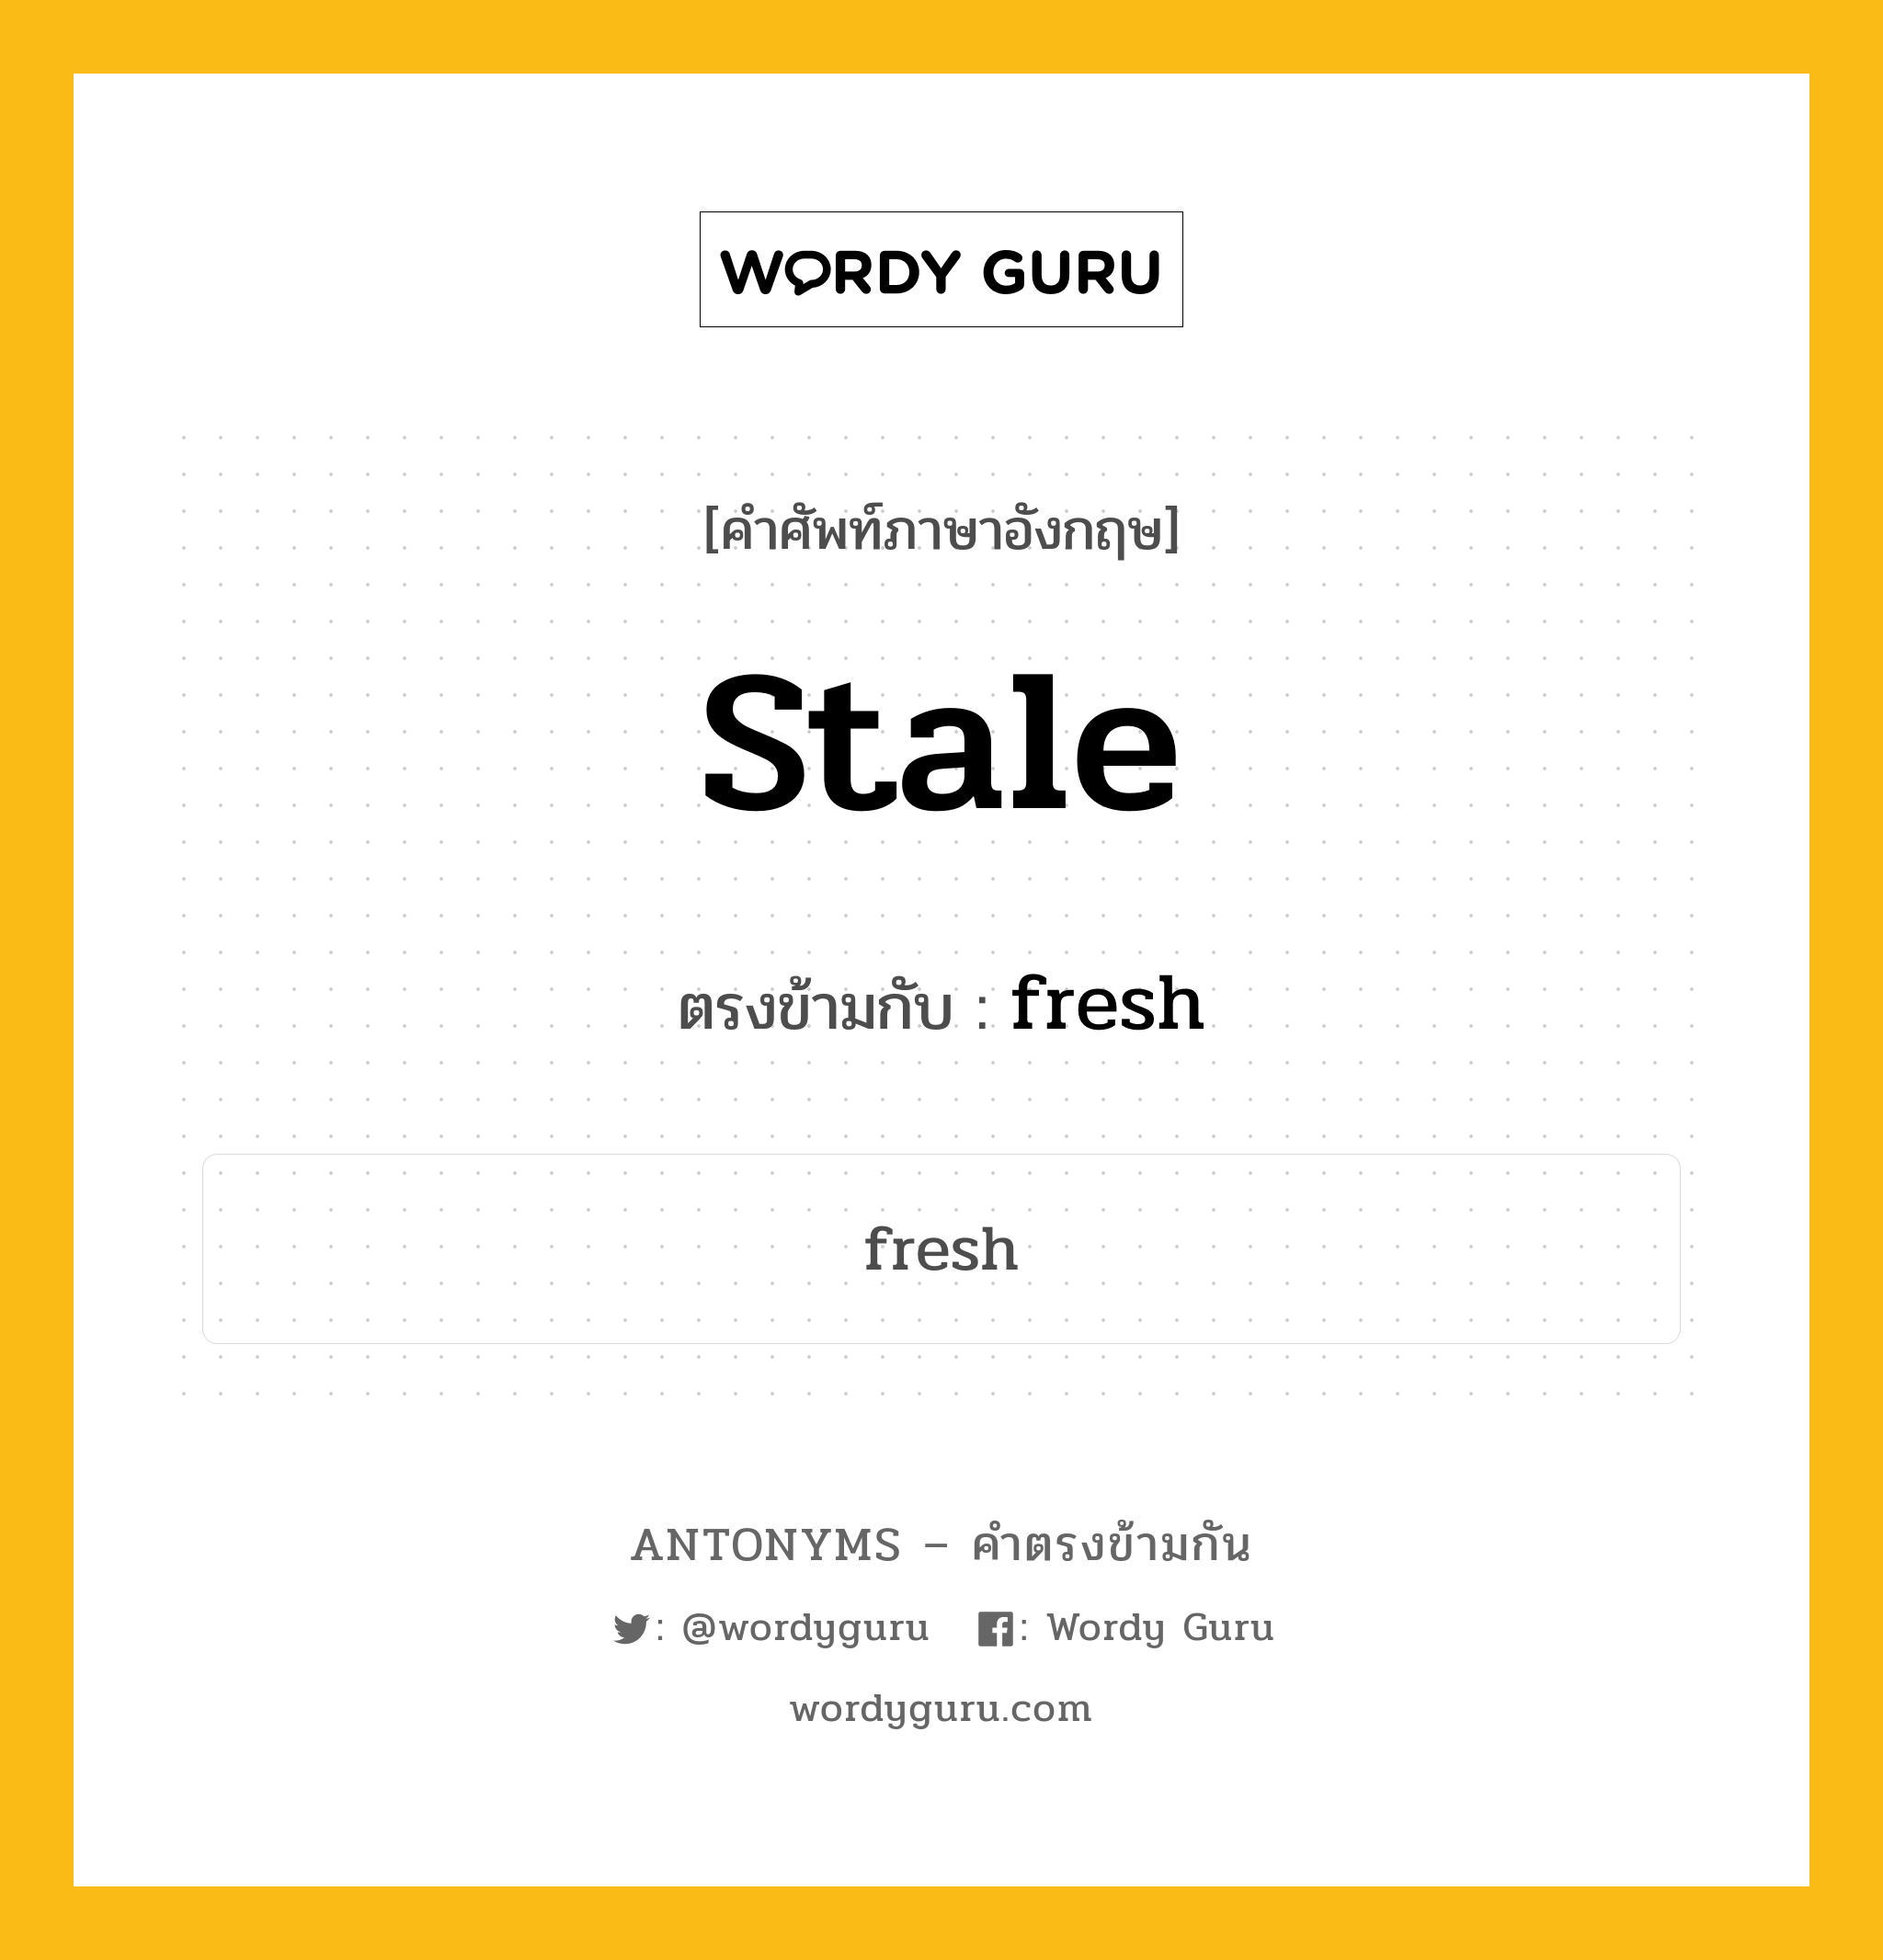 stale เป็นคำตรงข้ามกับคำไหนบ้าง?, คำศัพท์ภาษาอังกฤษ stale ตรงข้ามกับ fresh หมวด fresh